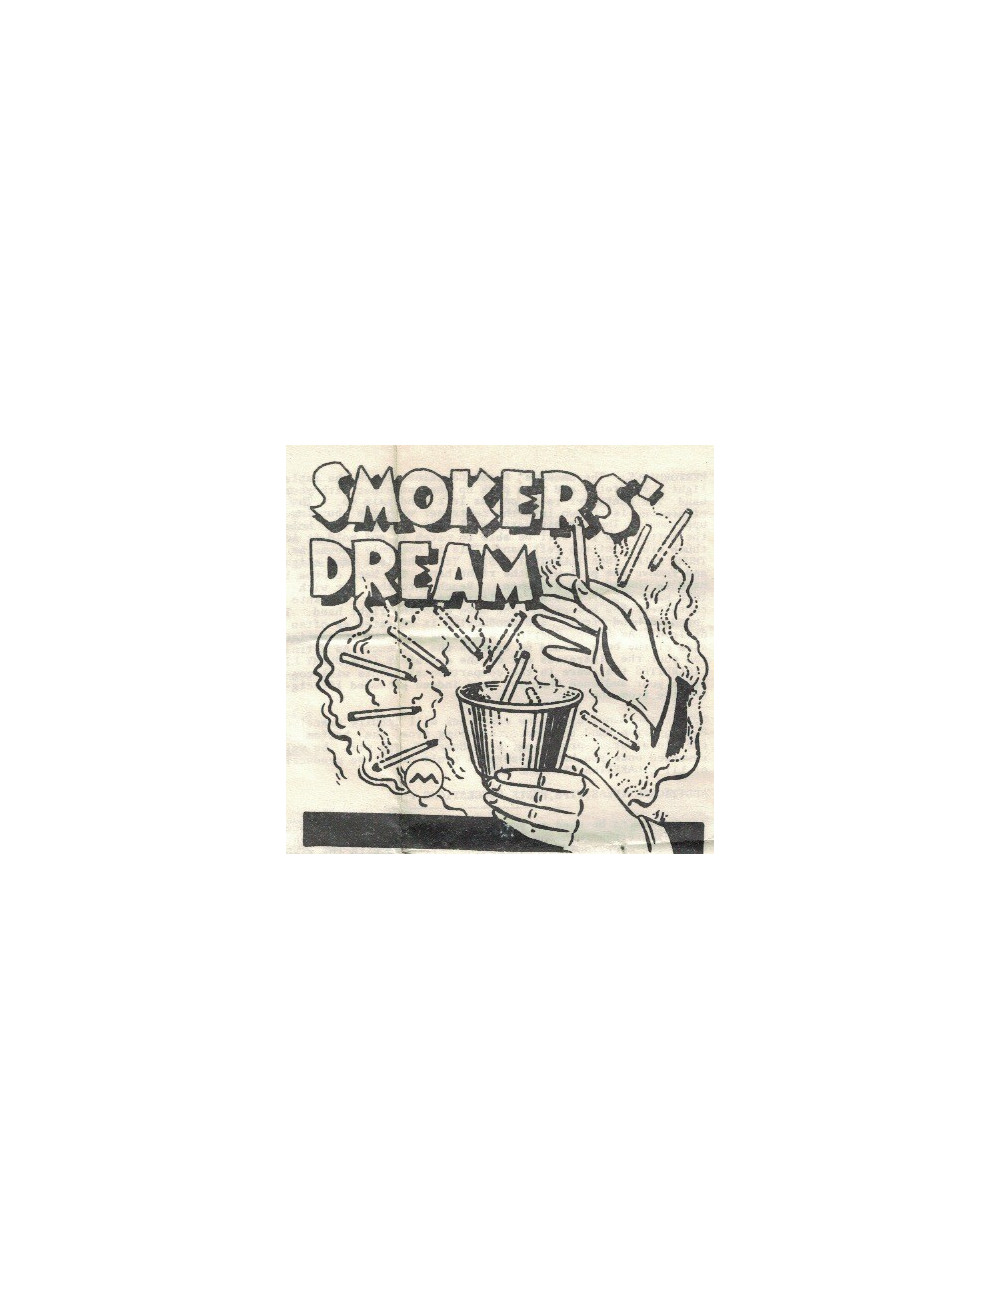 SMOKERS DREAM